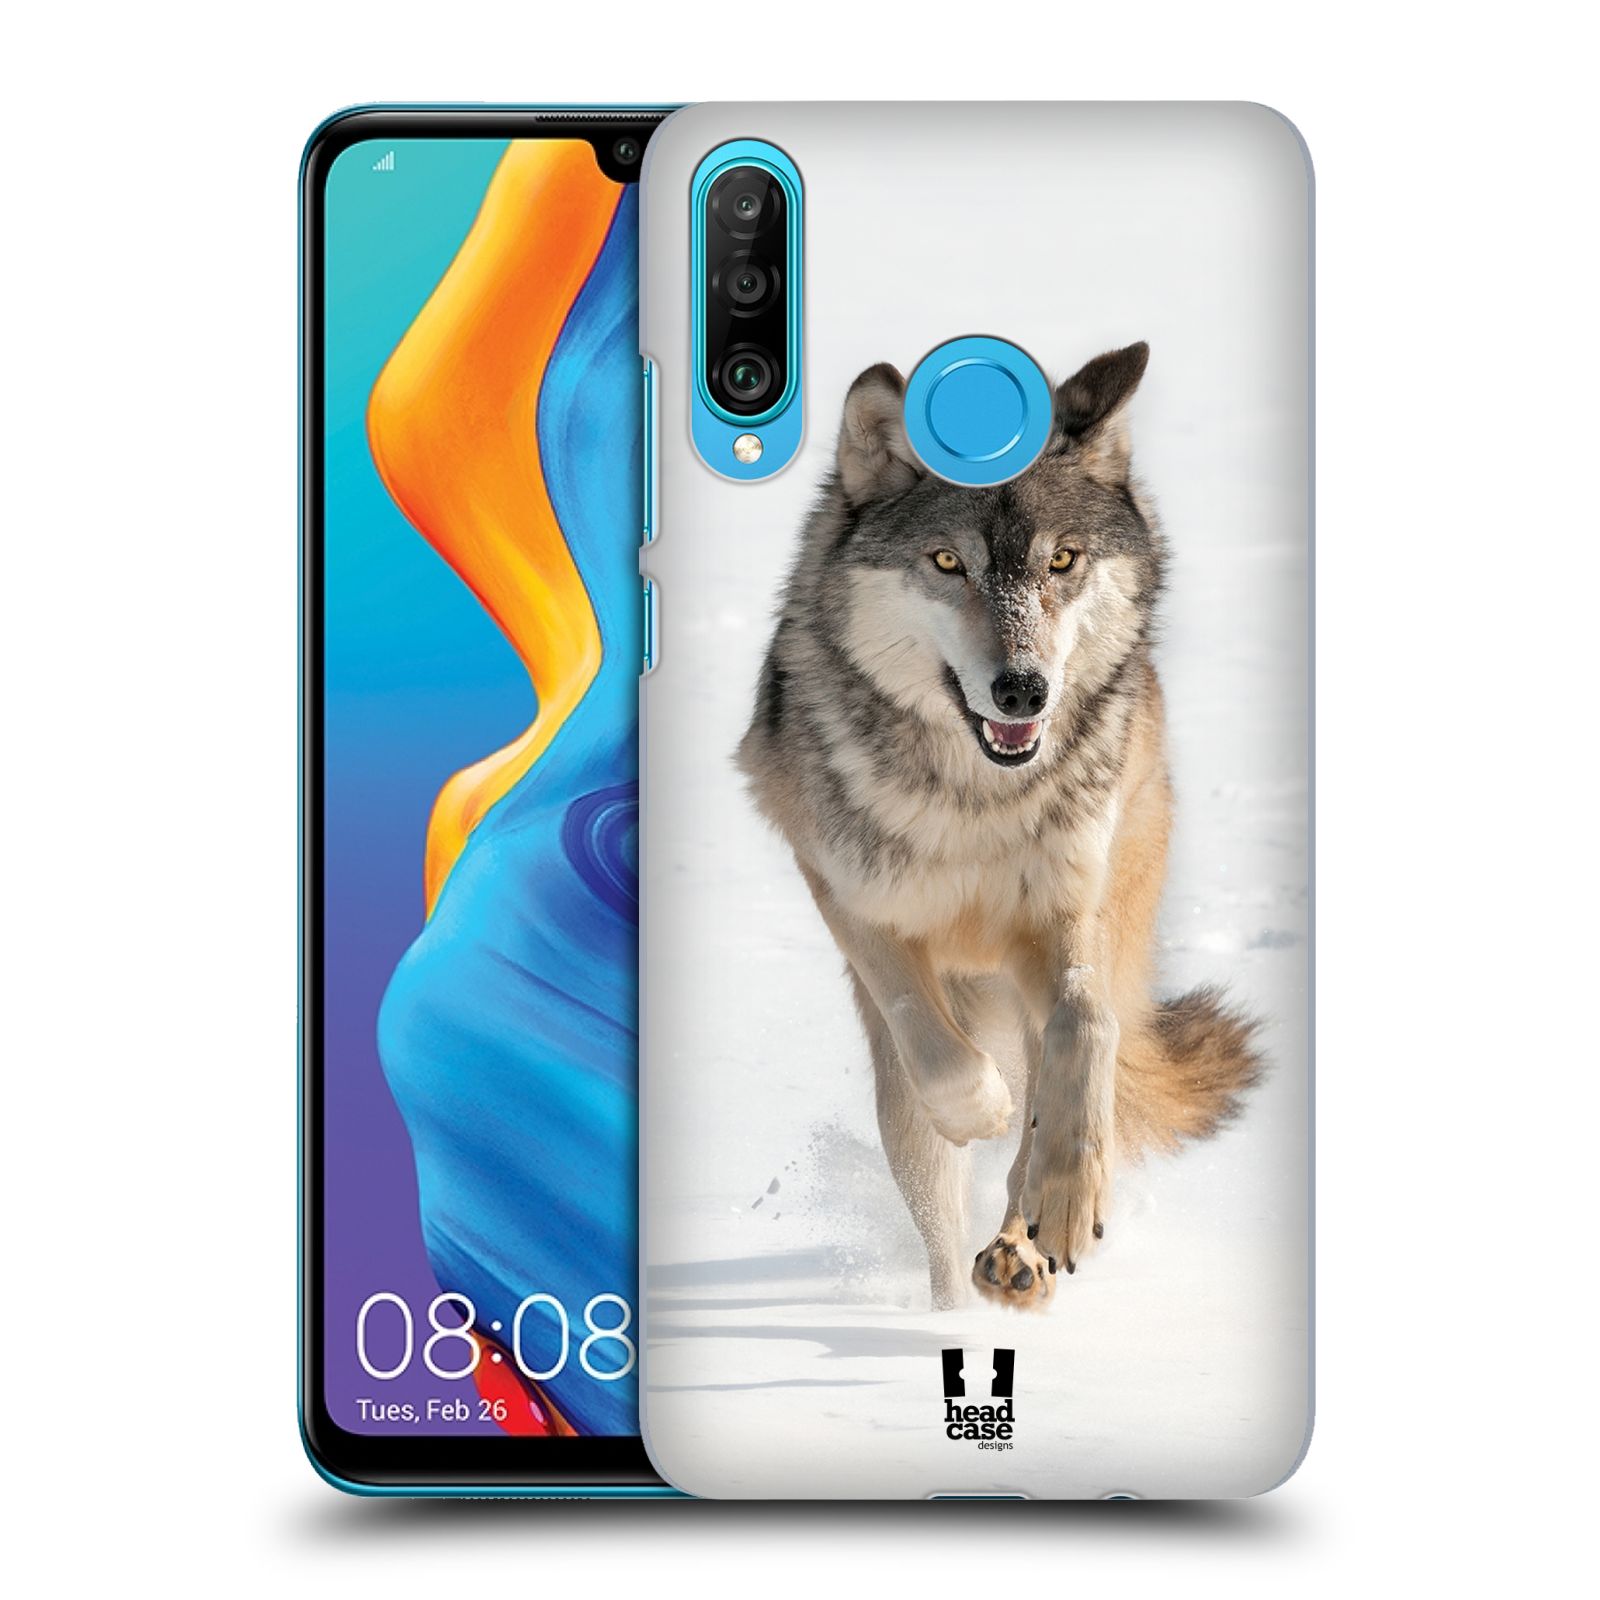 Zadní obal pro mobil Huawei P30 LITE - HEAD CASE - Svět zvířat divoký vlk